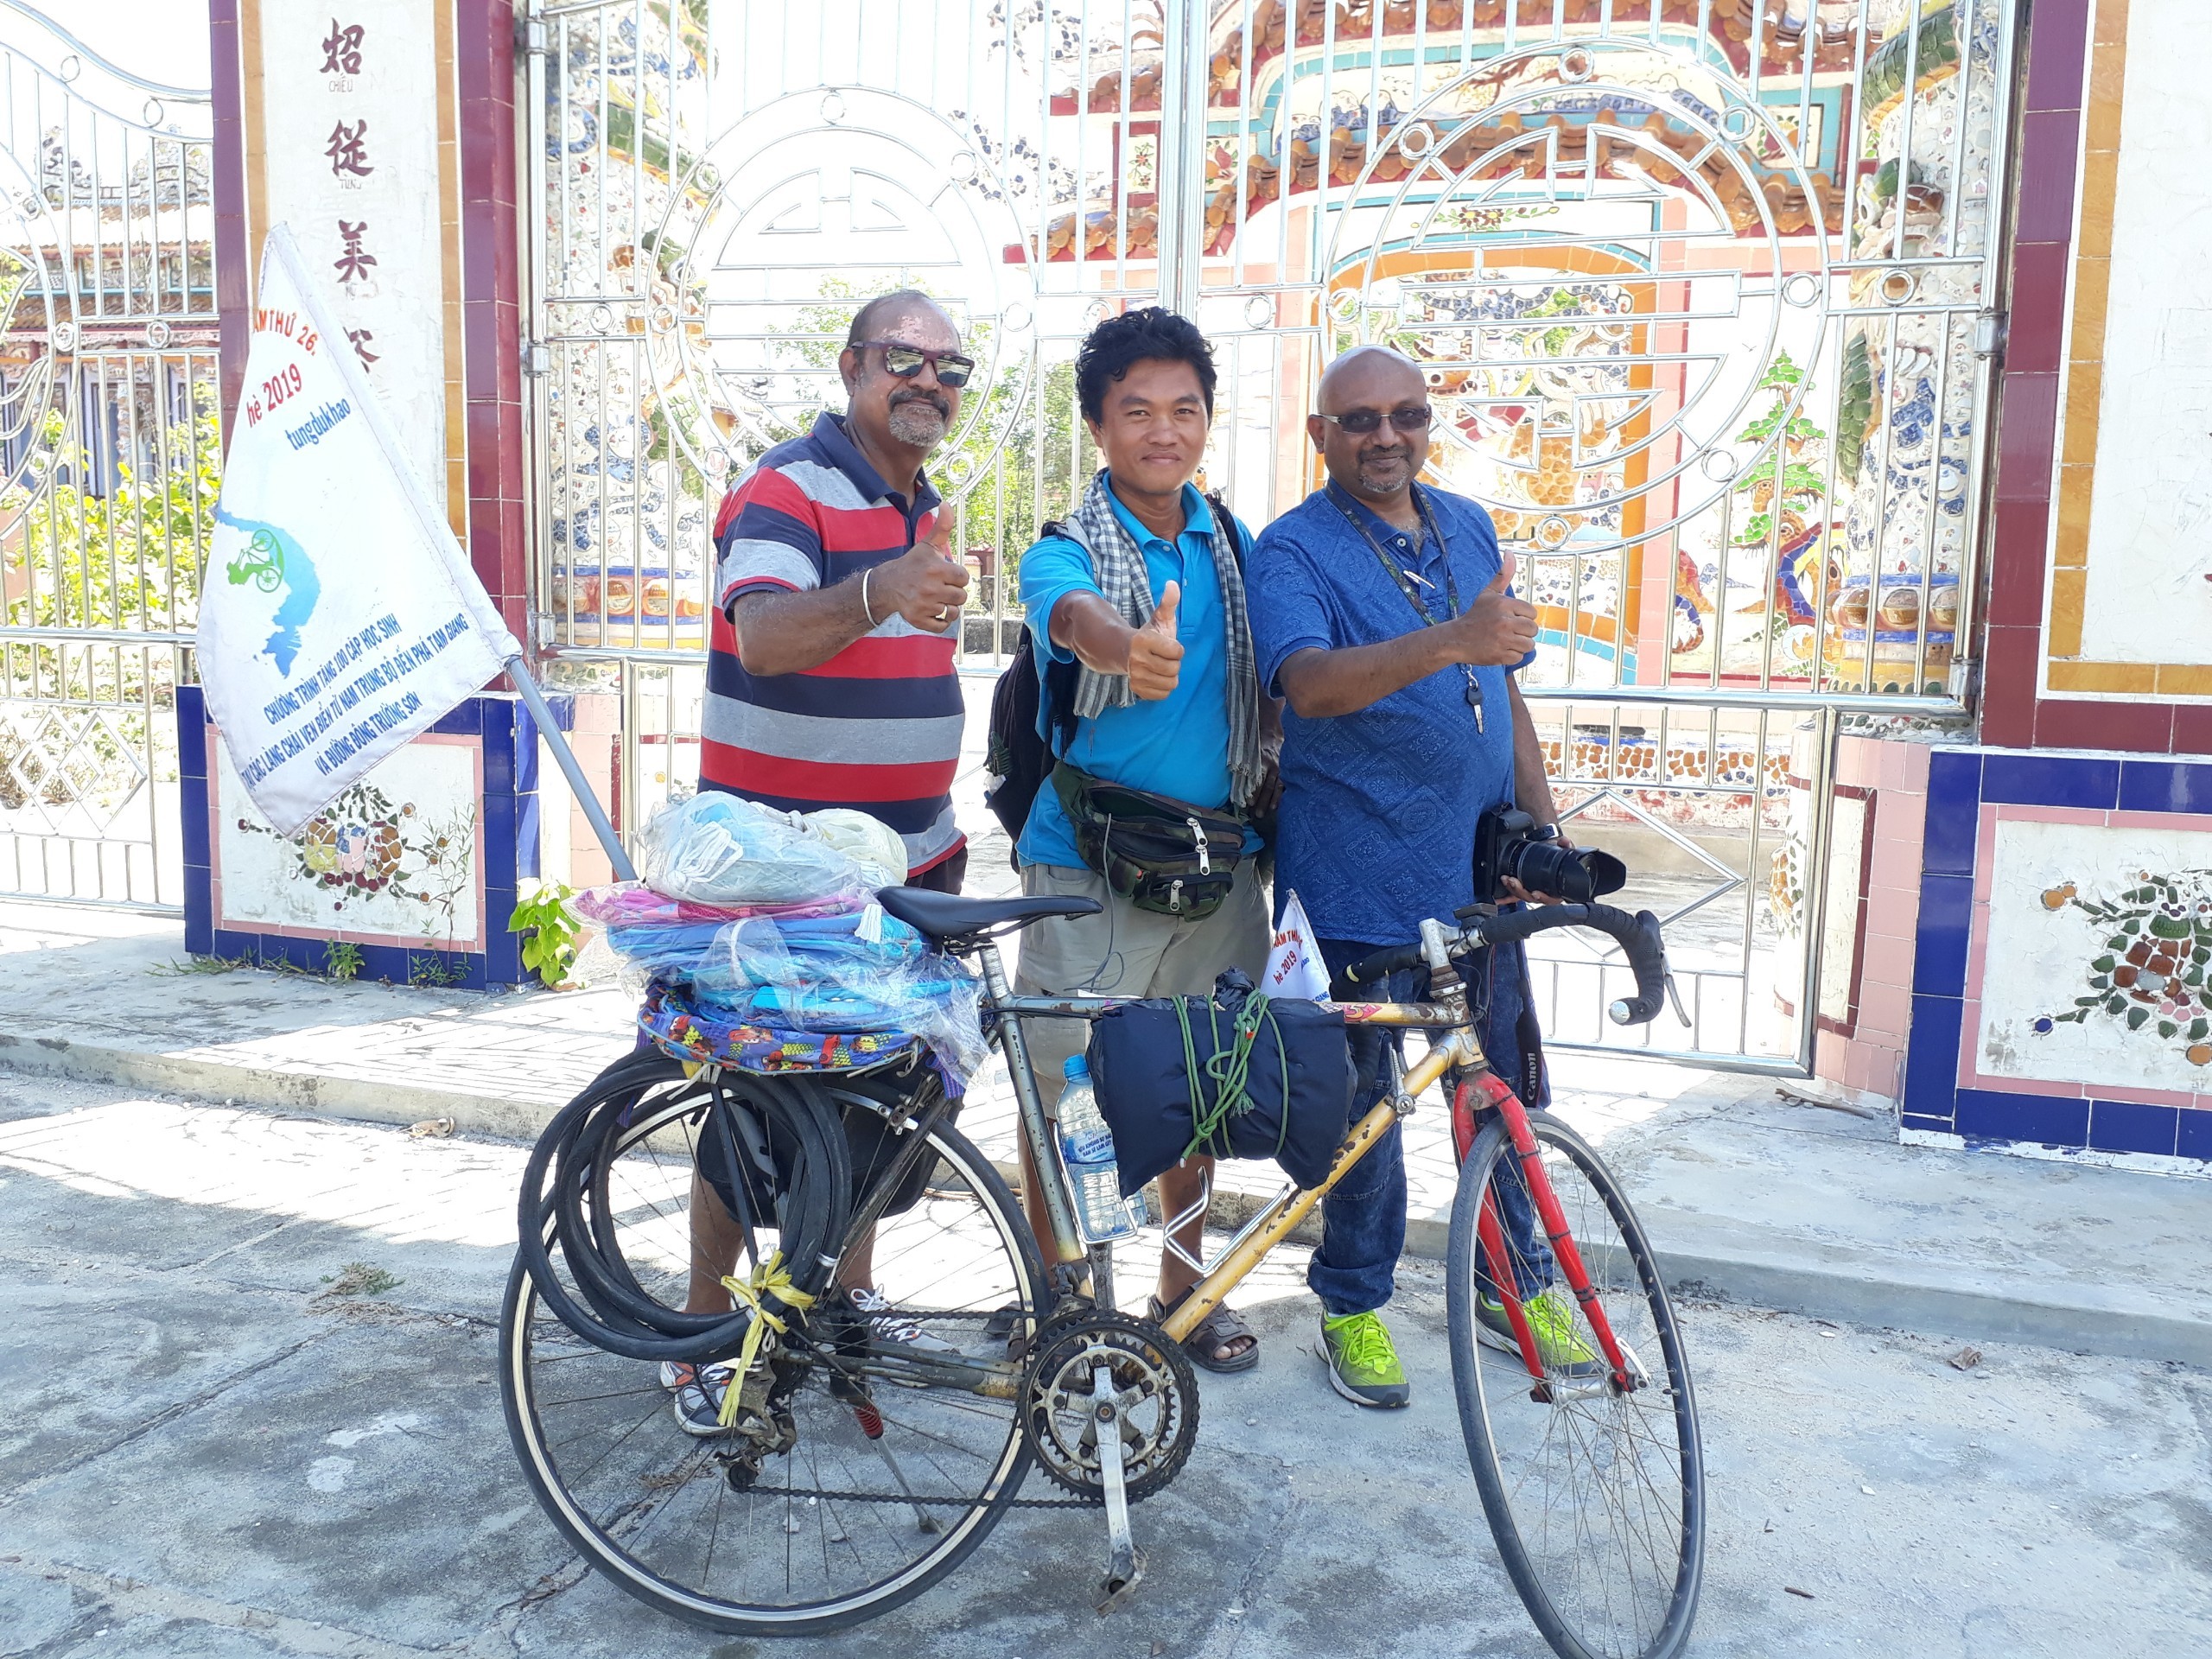 Xe đạp cũ giá rẻ dành cho học sinhsinh viên các nhà hảo tâm làm từ thiện   Mr Hải  MBN69130  0989967400